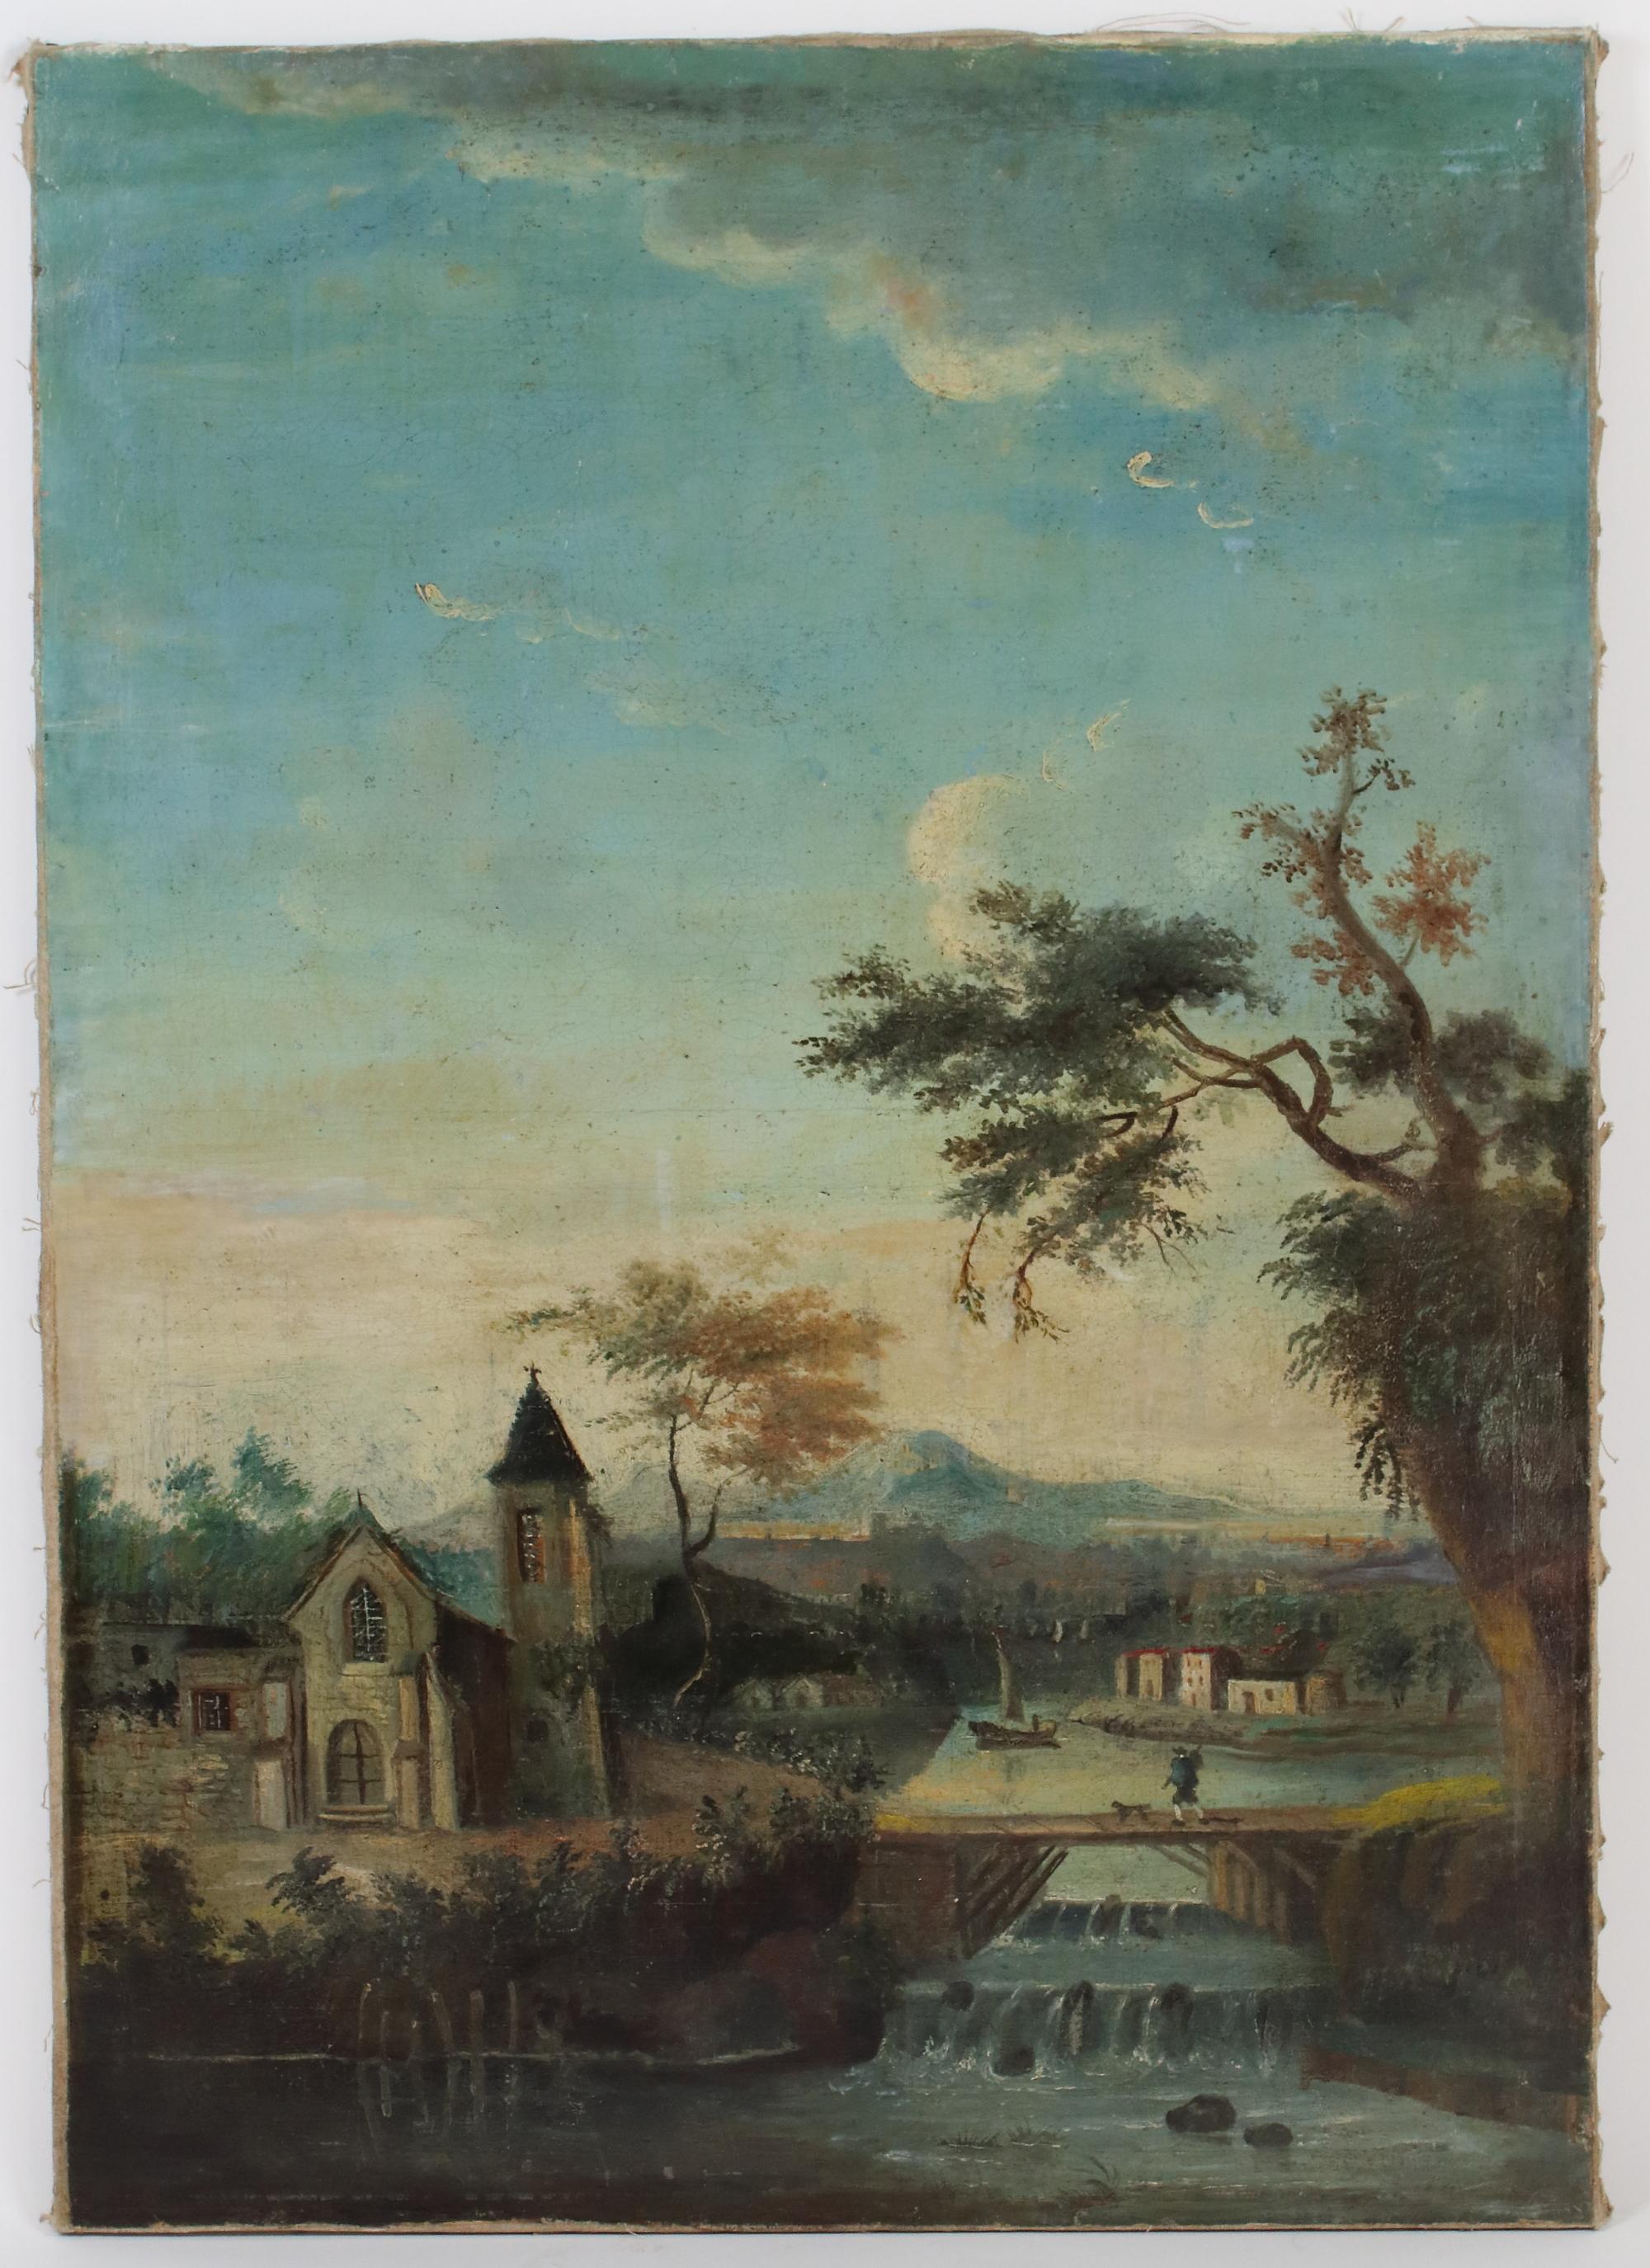 Spätes 18. Jahrhundert Französisch romantische Landschaft Gemälde, Öl auf Leinwand

Charmantes hochrechteckiges, ideales französisches Landschaftsgemälde, gemalt in Öl auf Leinwand, das ein kleines Dorf am Ufer eines Flusses zeigt. Im Vordergrund